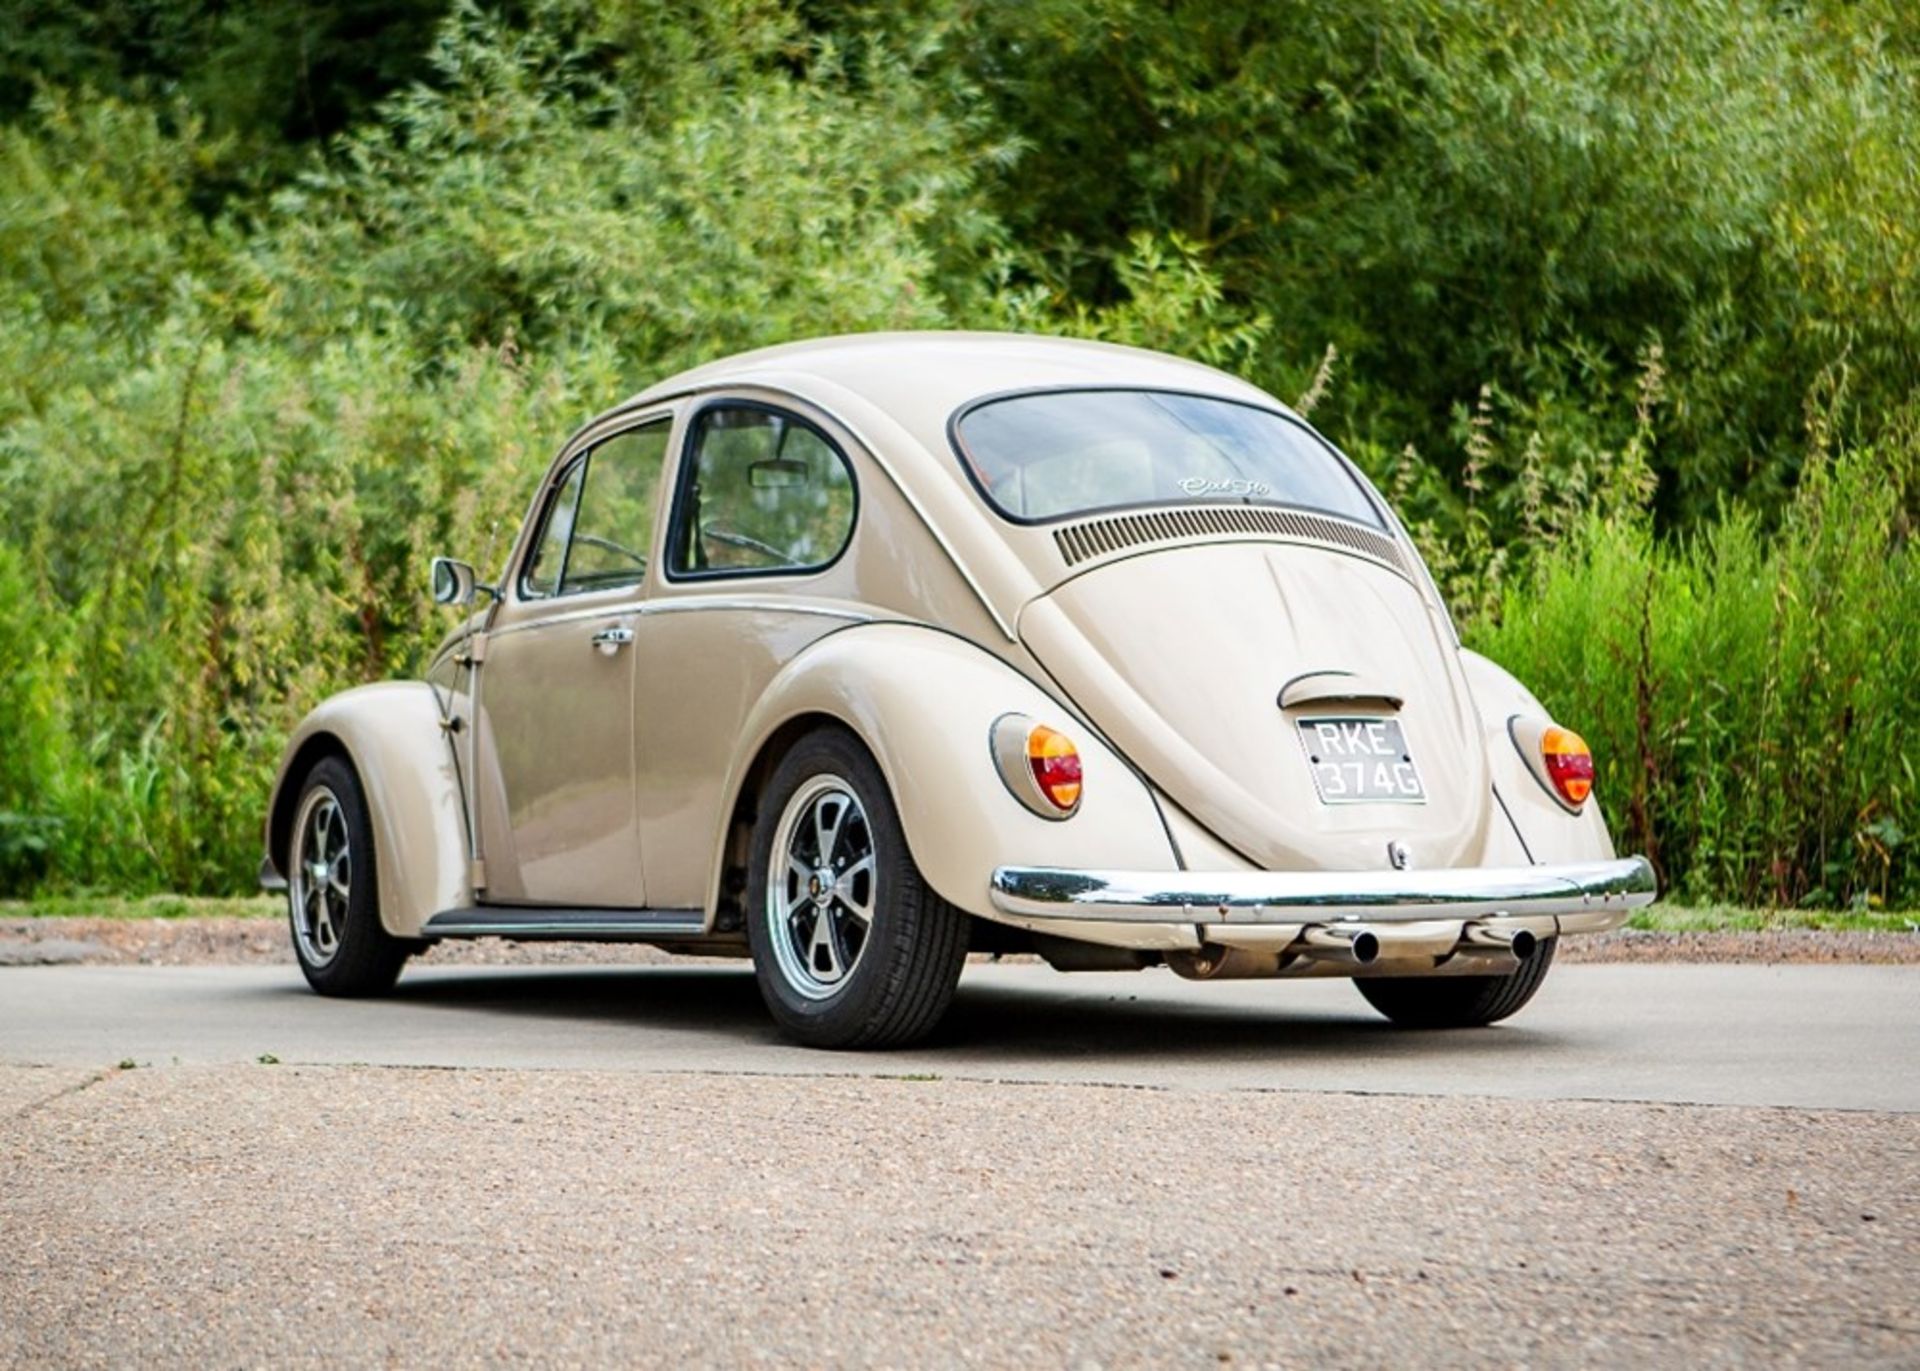 1969 Volkswagen Beetle - Image 5 of 9